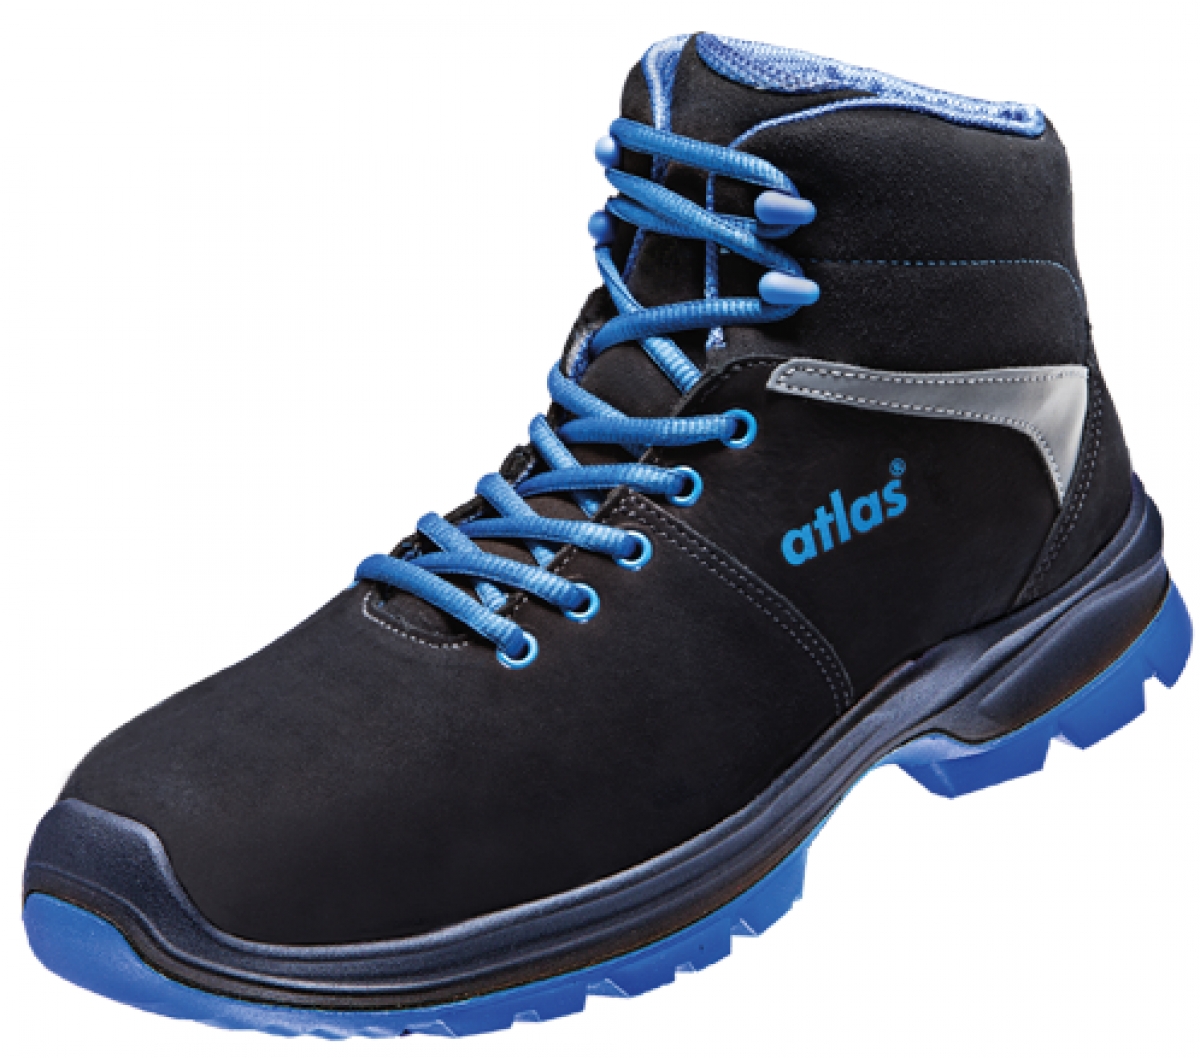 ATLAS-S3-Sicherheitsschuhe, ERGO-MED 805 XP, ESD, Weite 12, schwarz/blau